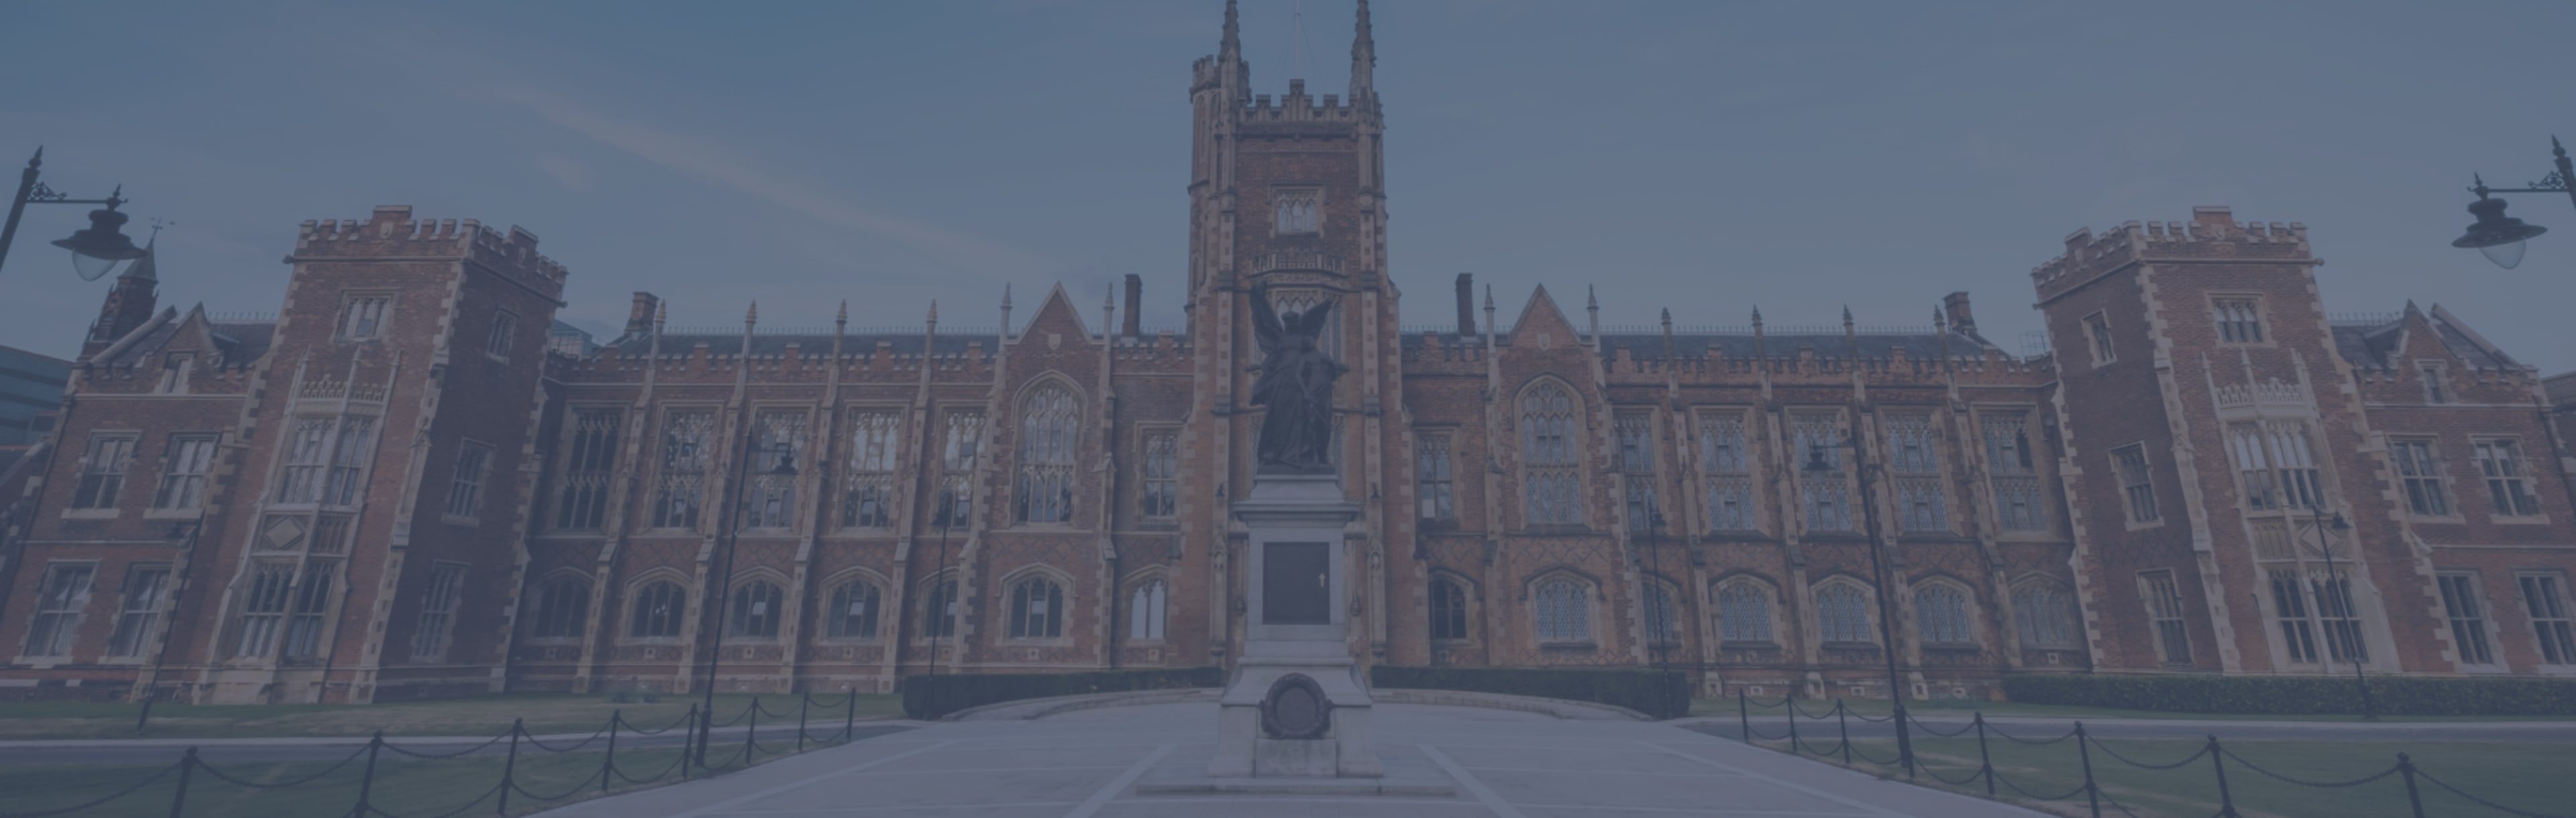 Queen's University Belfast PgDip in geweld, terrorisme en veiligheid